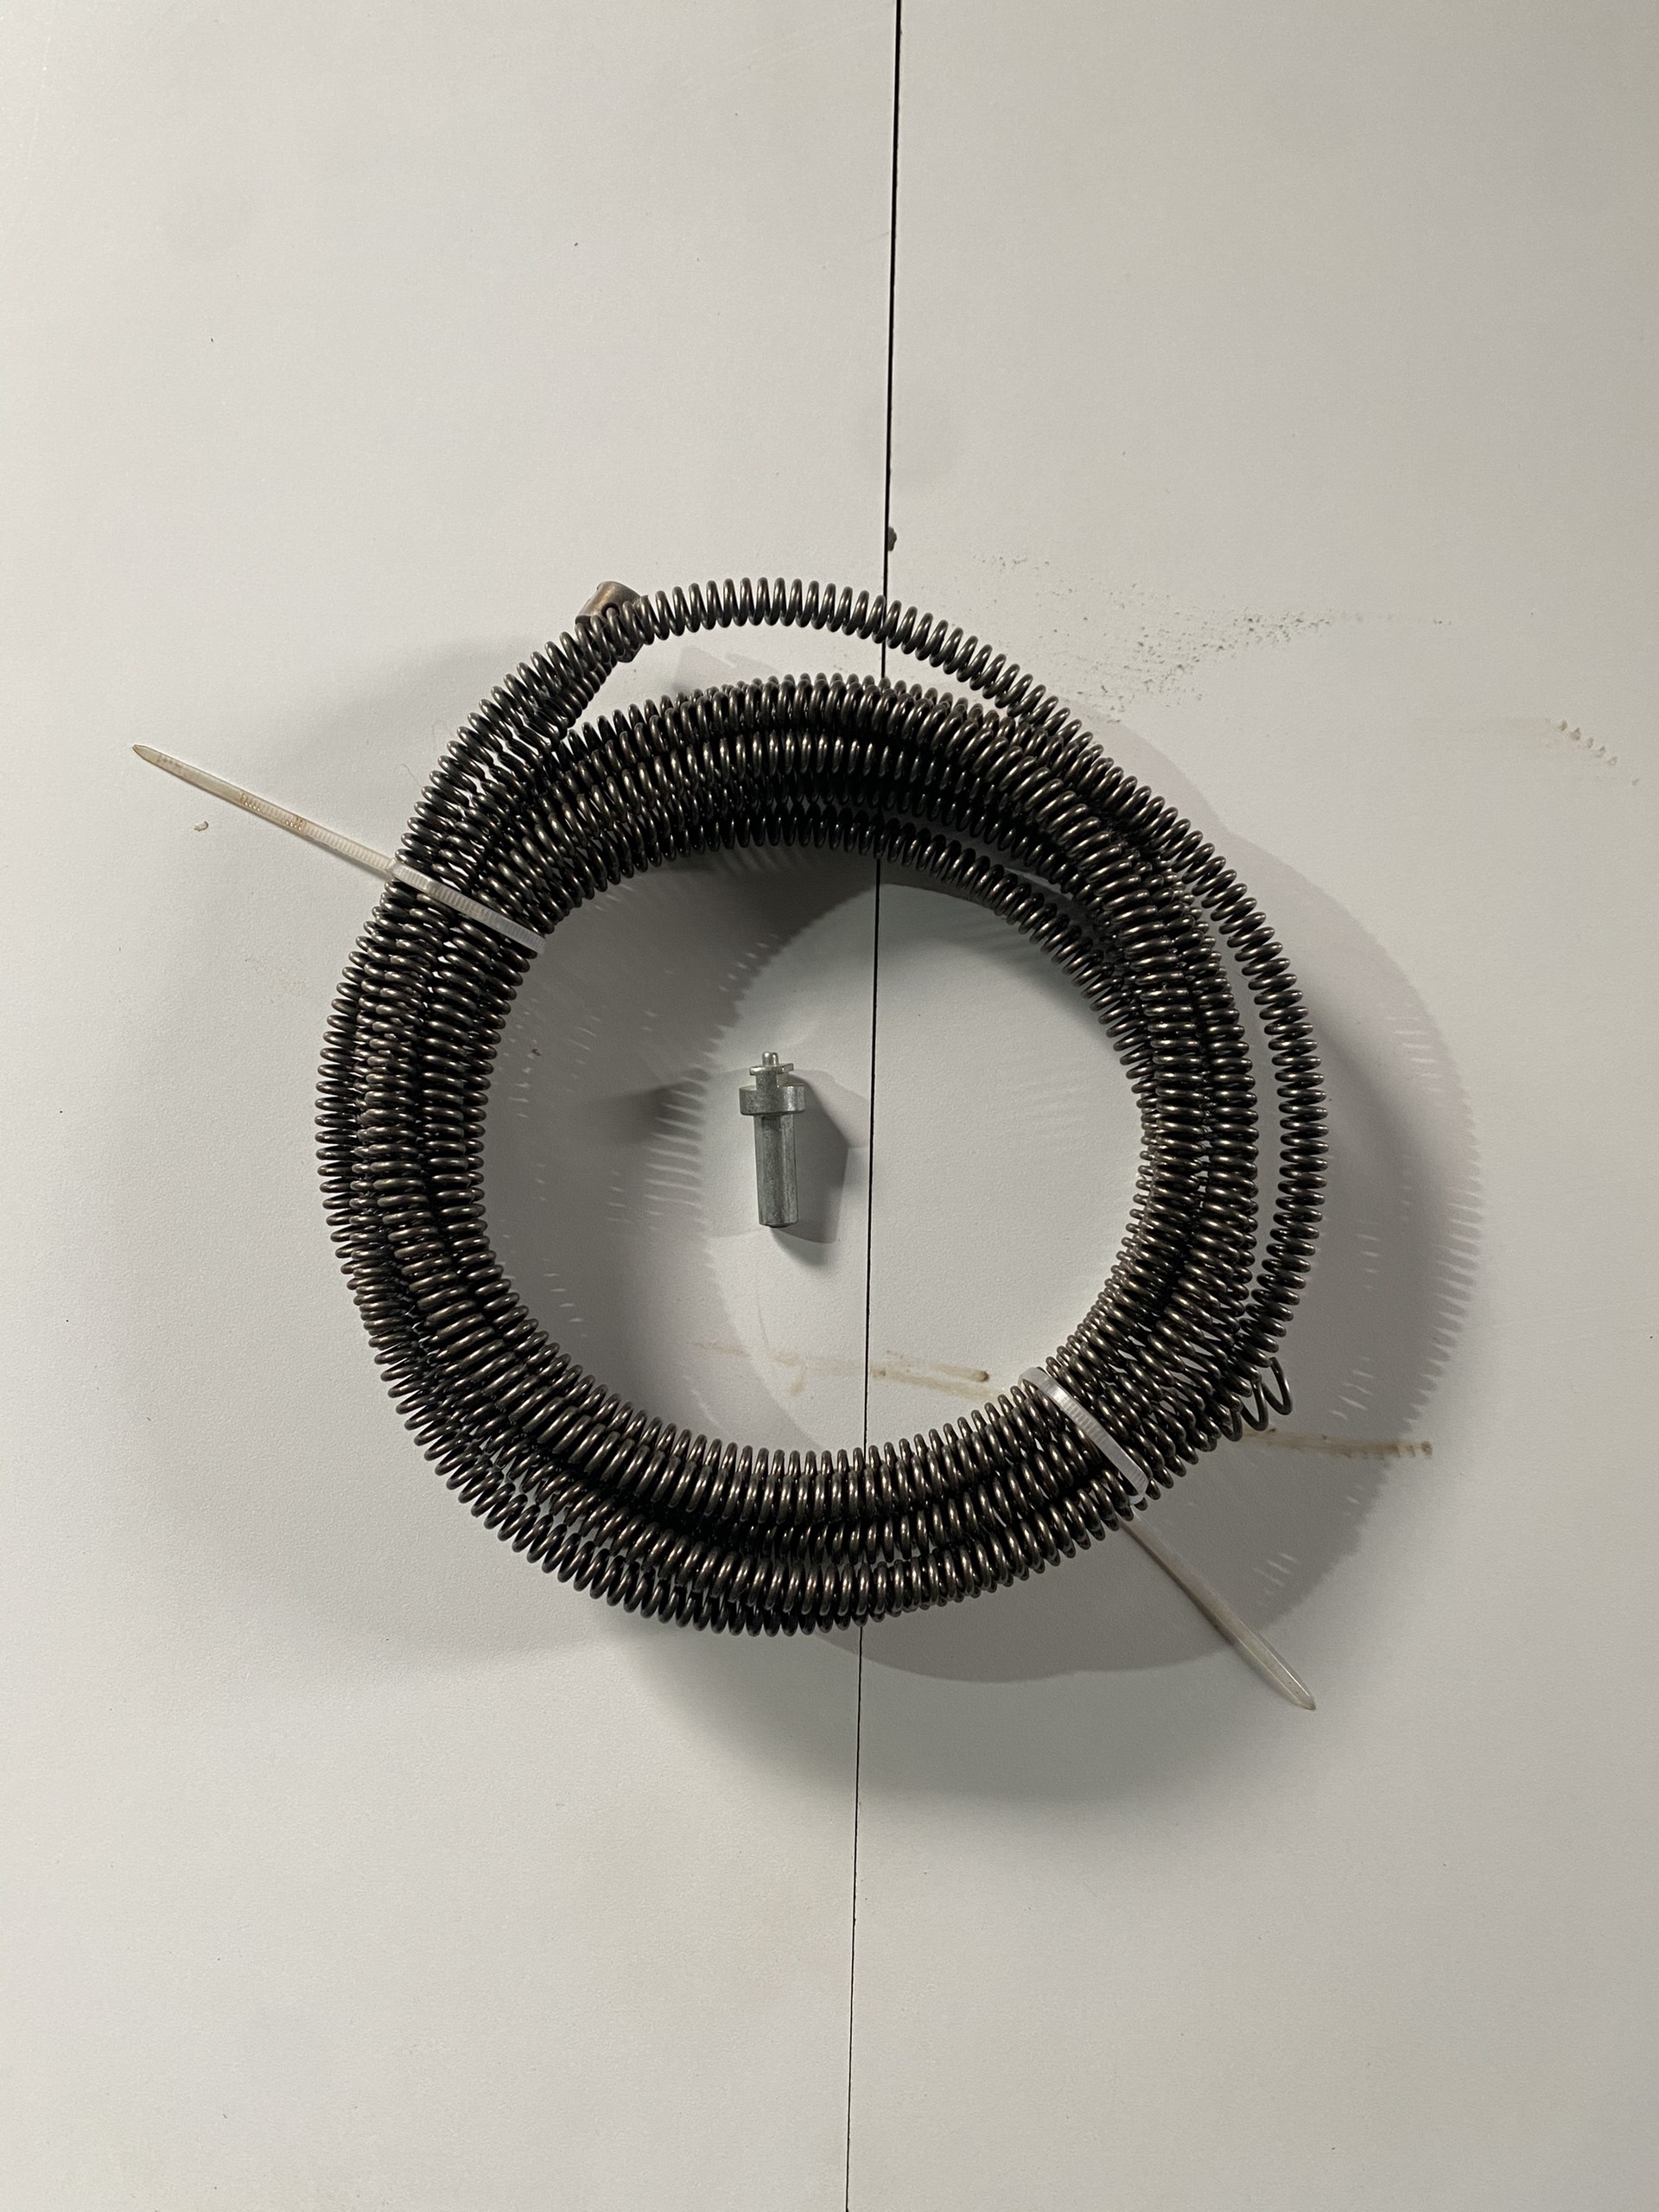 Dây thông tắc cống Ф10, dây thông nghẹt cống dùng cho máy khoan dài 5m dây lò xo + 1 đầu kết nối máy khoan